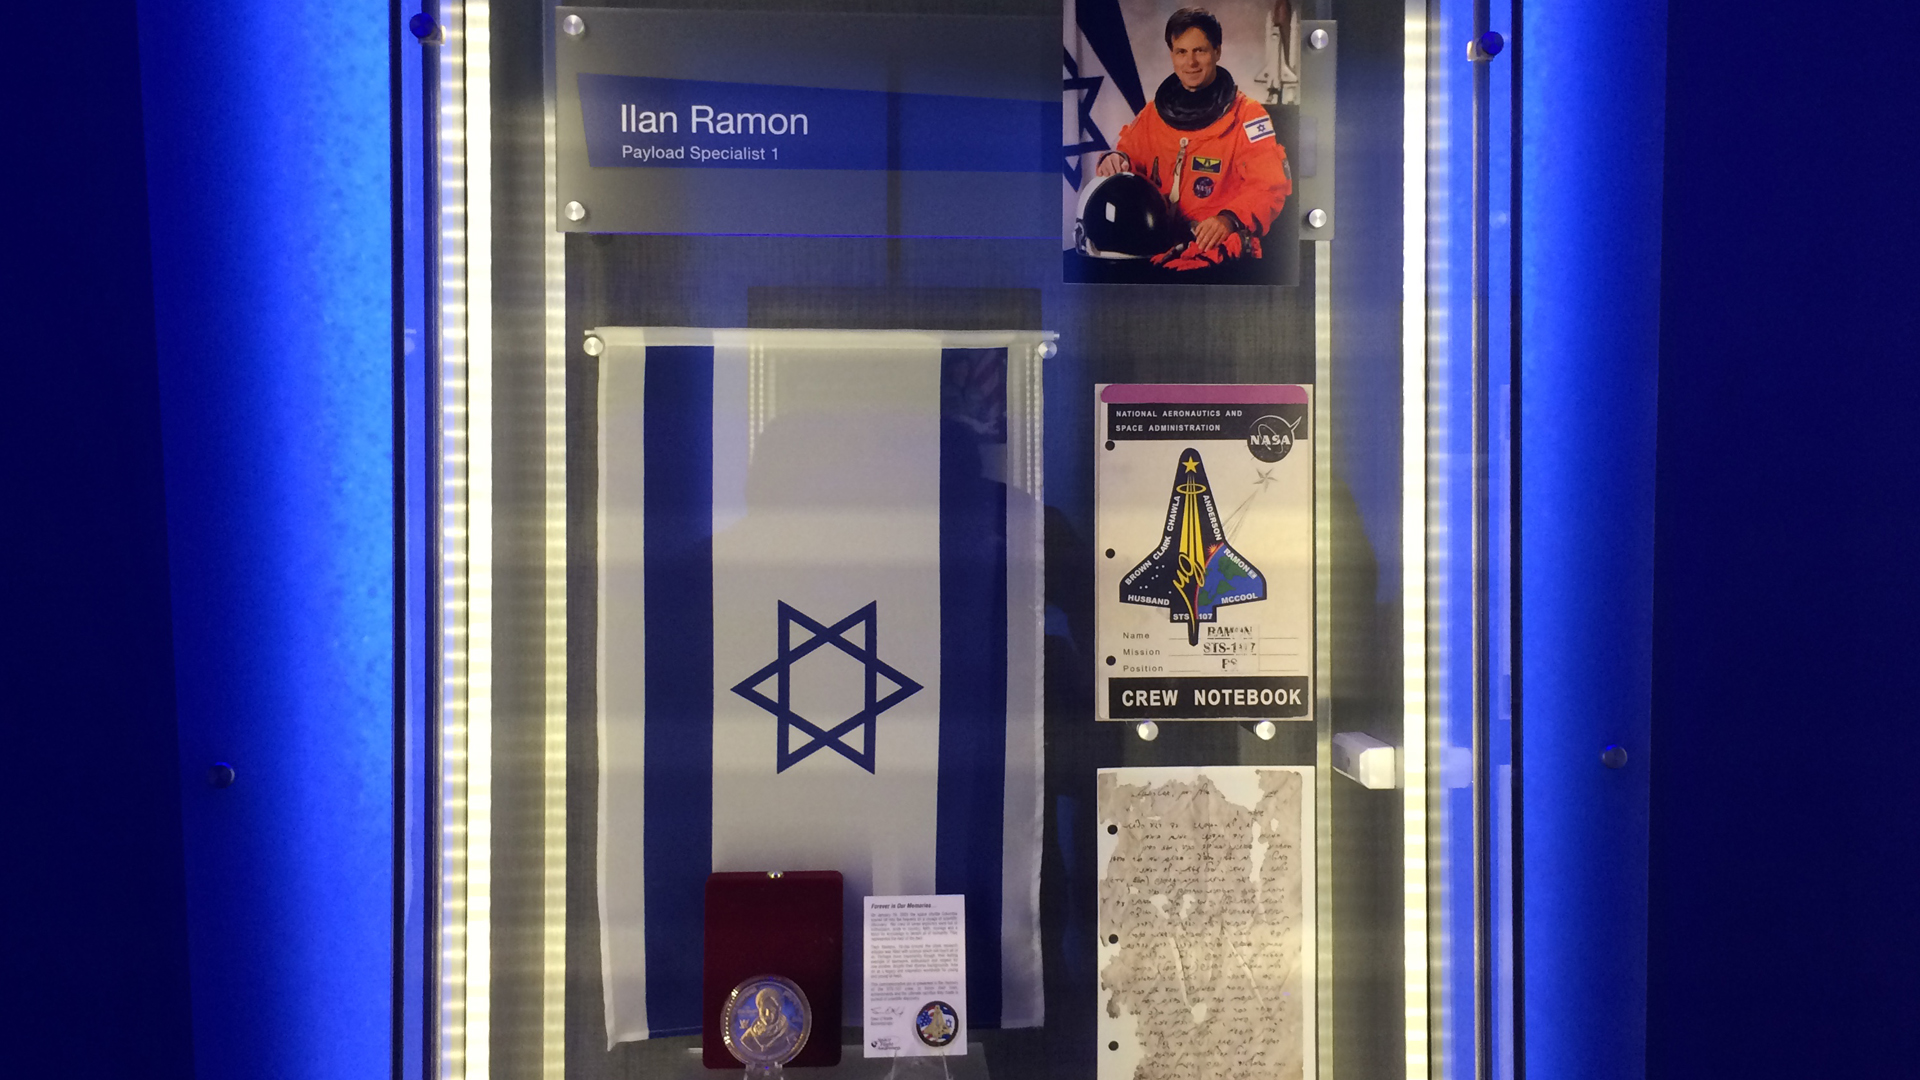 Jedes der sieben verstorbenen Besatzungsmitglieder wird in der Ausstellung gewürdigt. Hier der Schaukasten des Israelis Ilan Ramon.